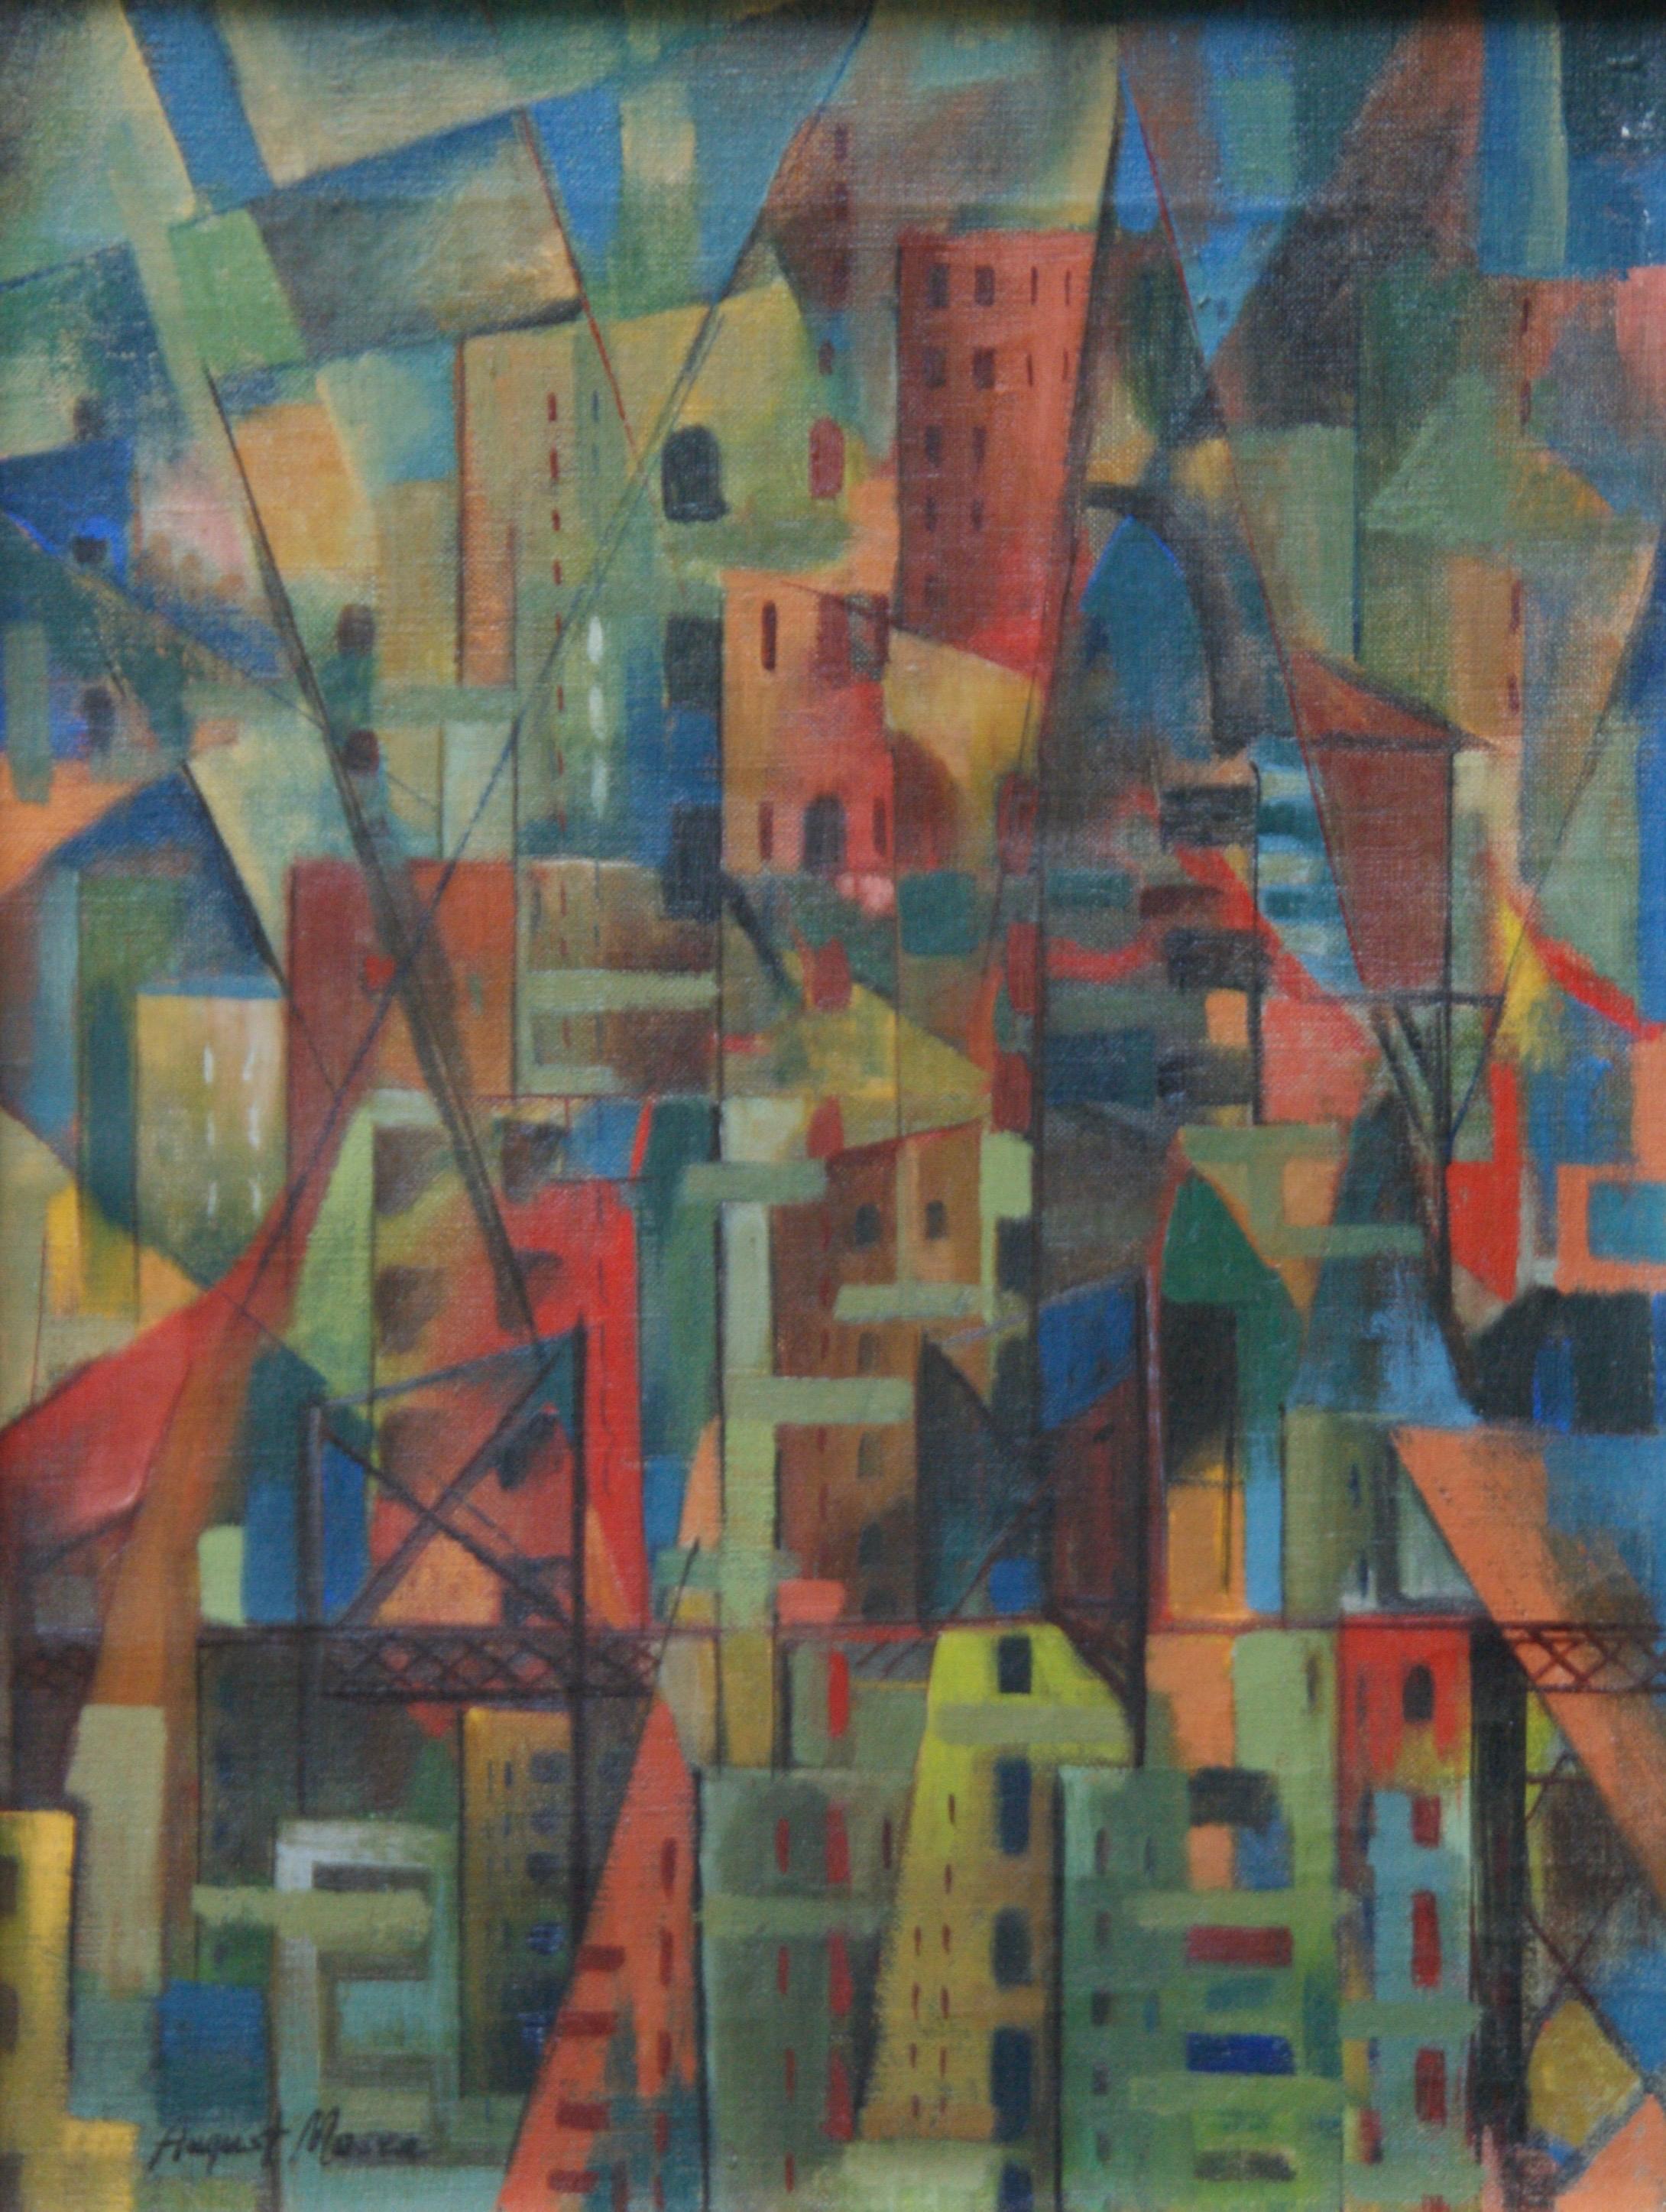 Abstract Painting August Mosca - Peinture à l'huile géométrique abstraite américaine WPA, champ de couleur, abstrait, moderne, non objectif